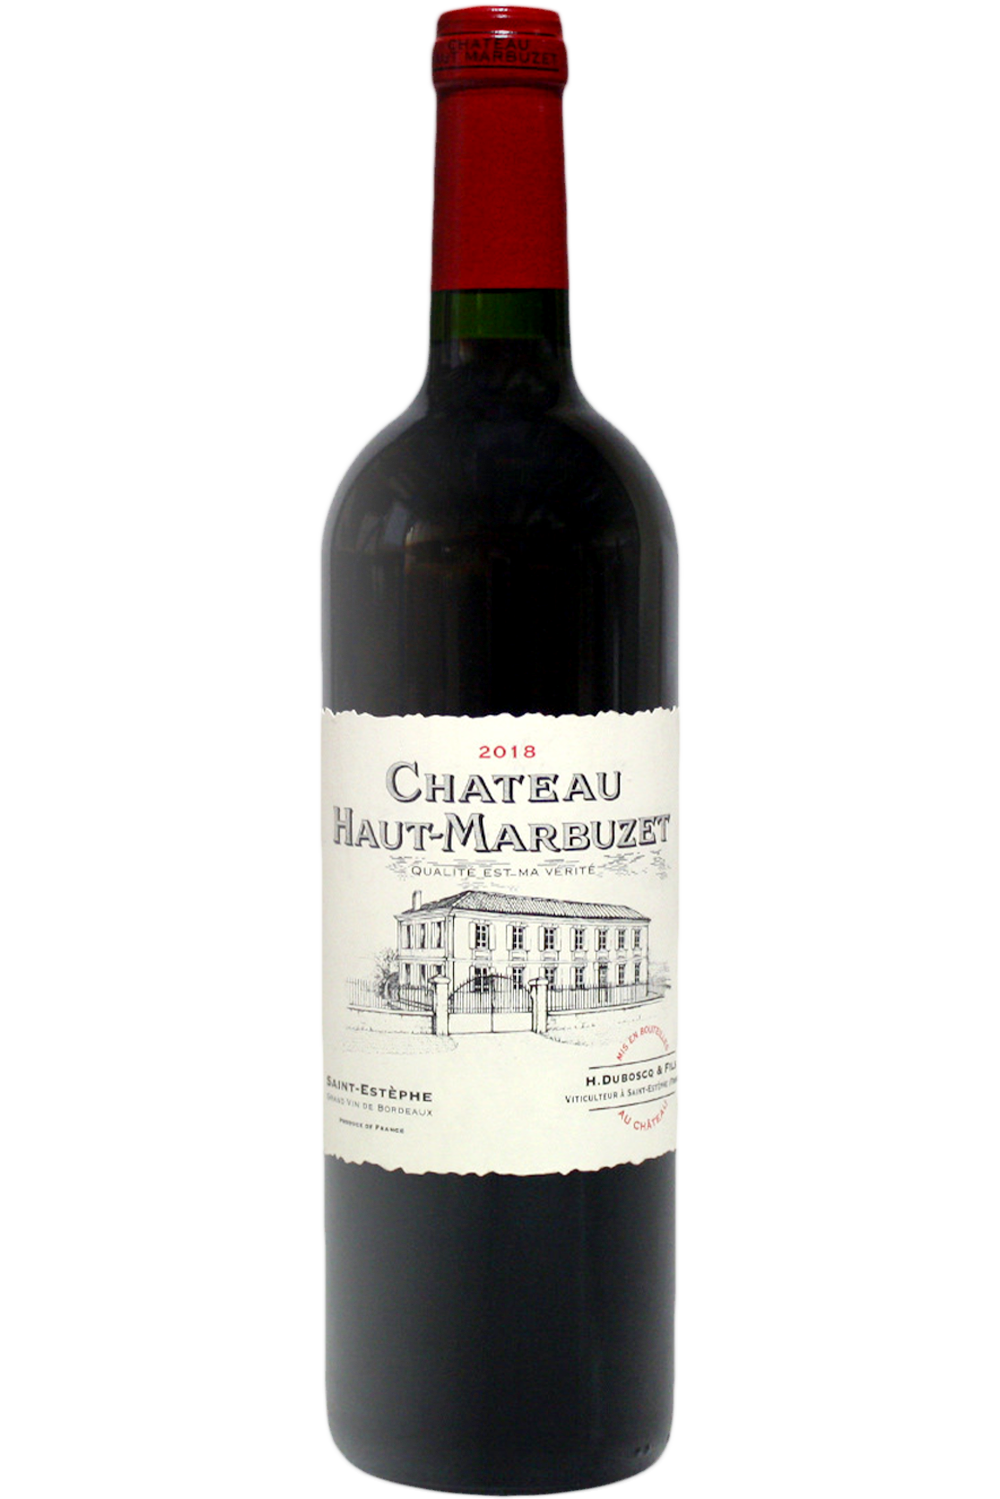 WineVins Chateau Haut Marbuzet 2018